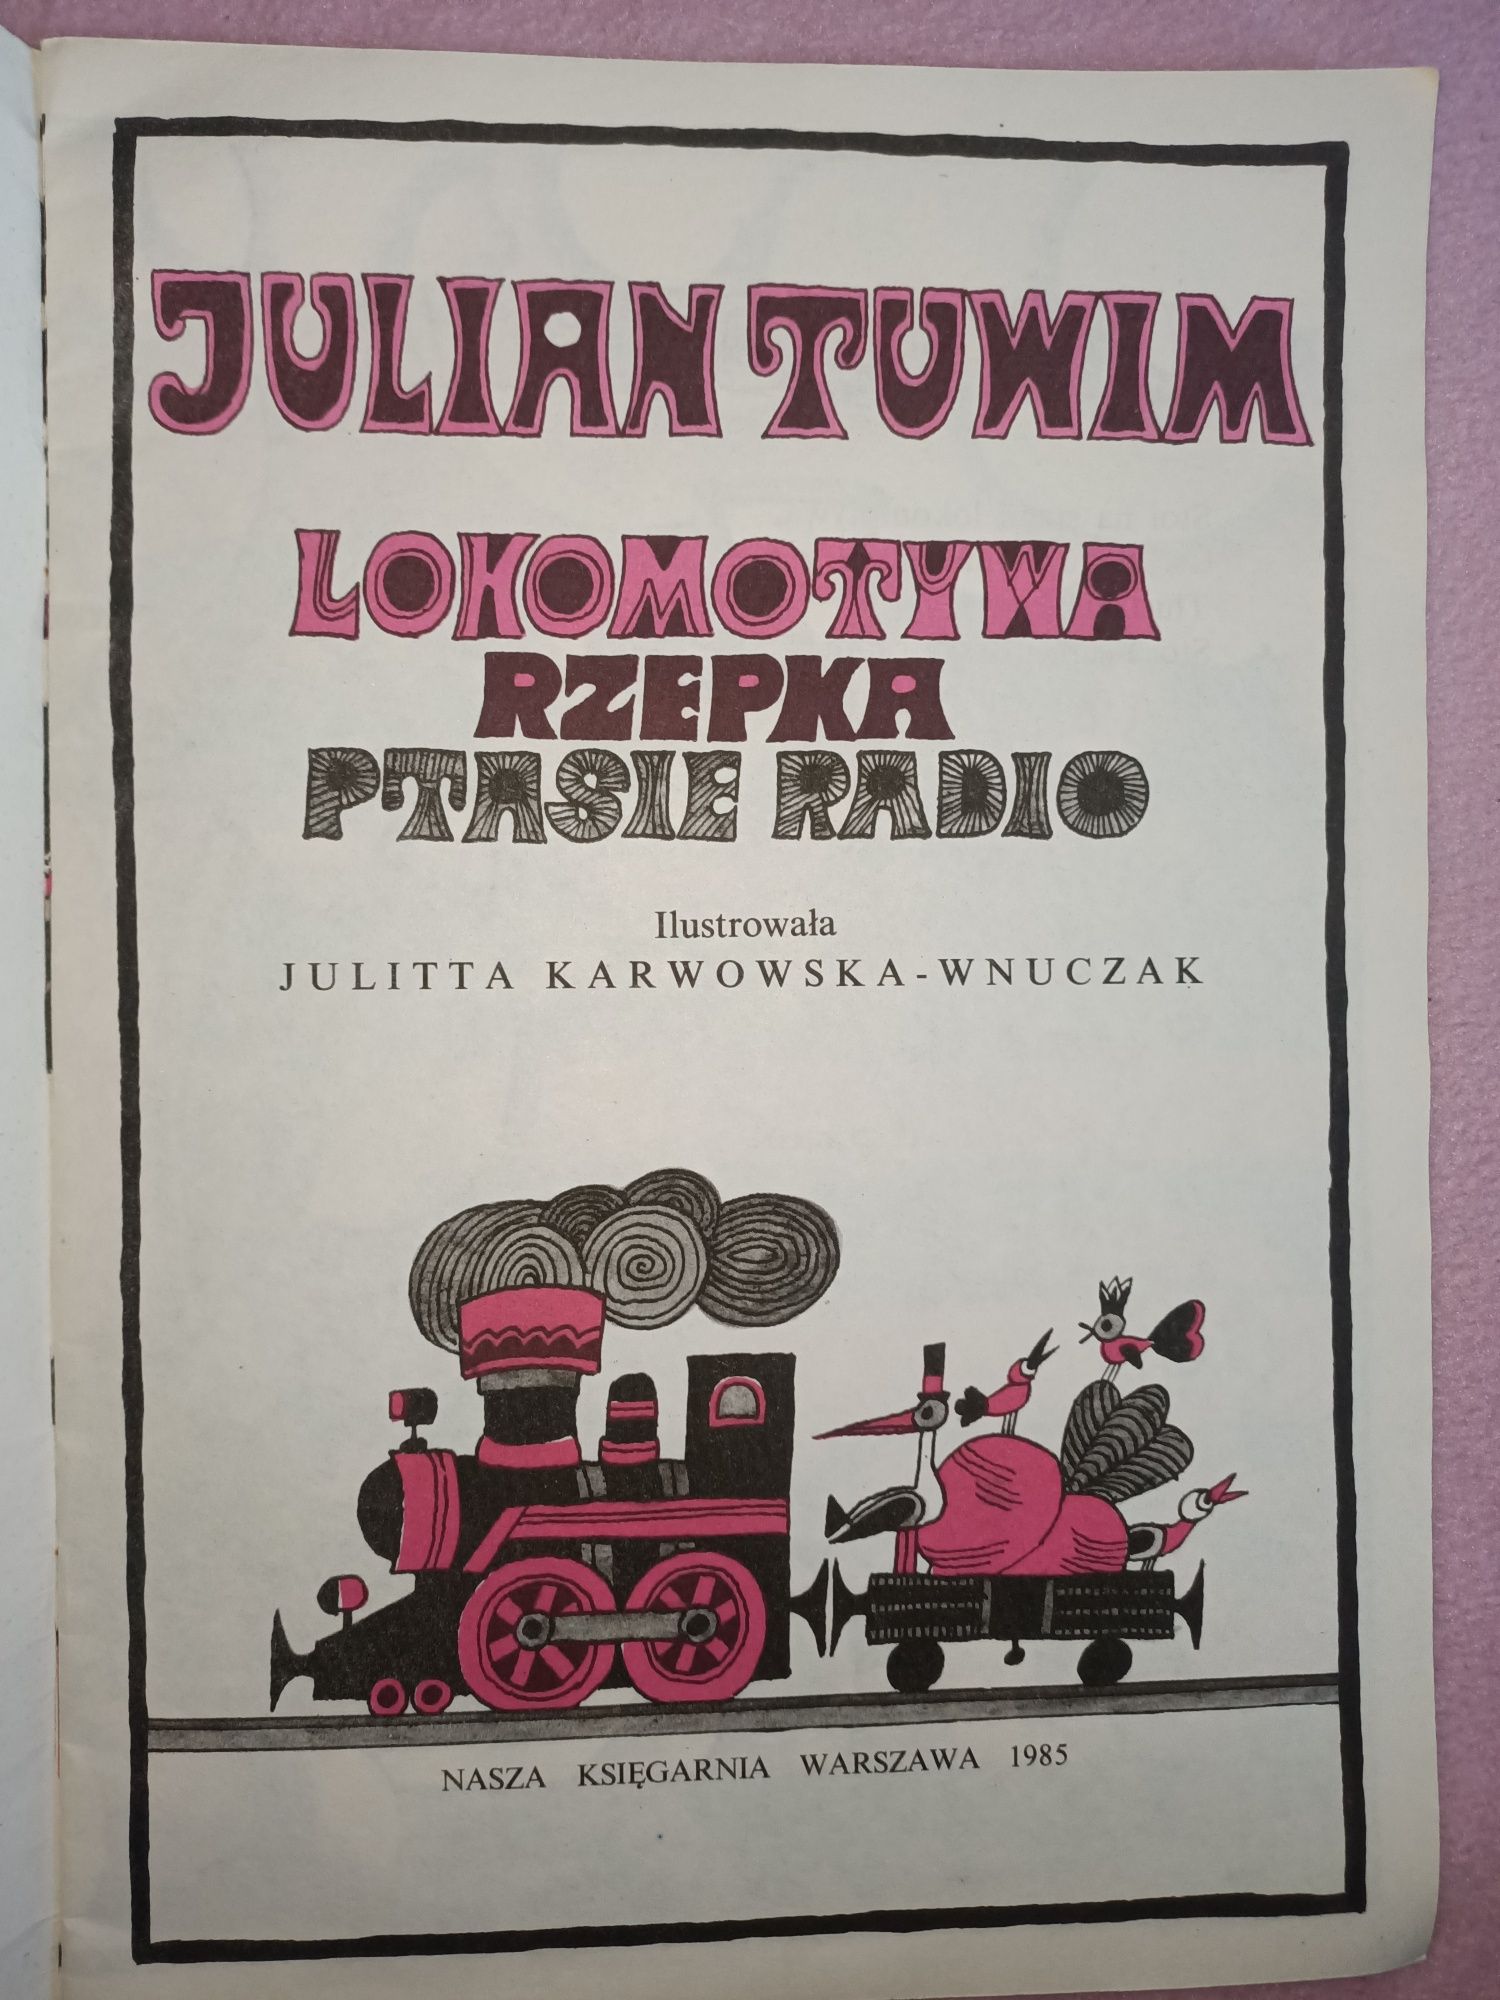 Lokomotywa Rzepka Ptasie Radio Tuwim kolekcjonerska PRL